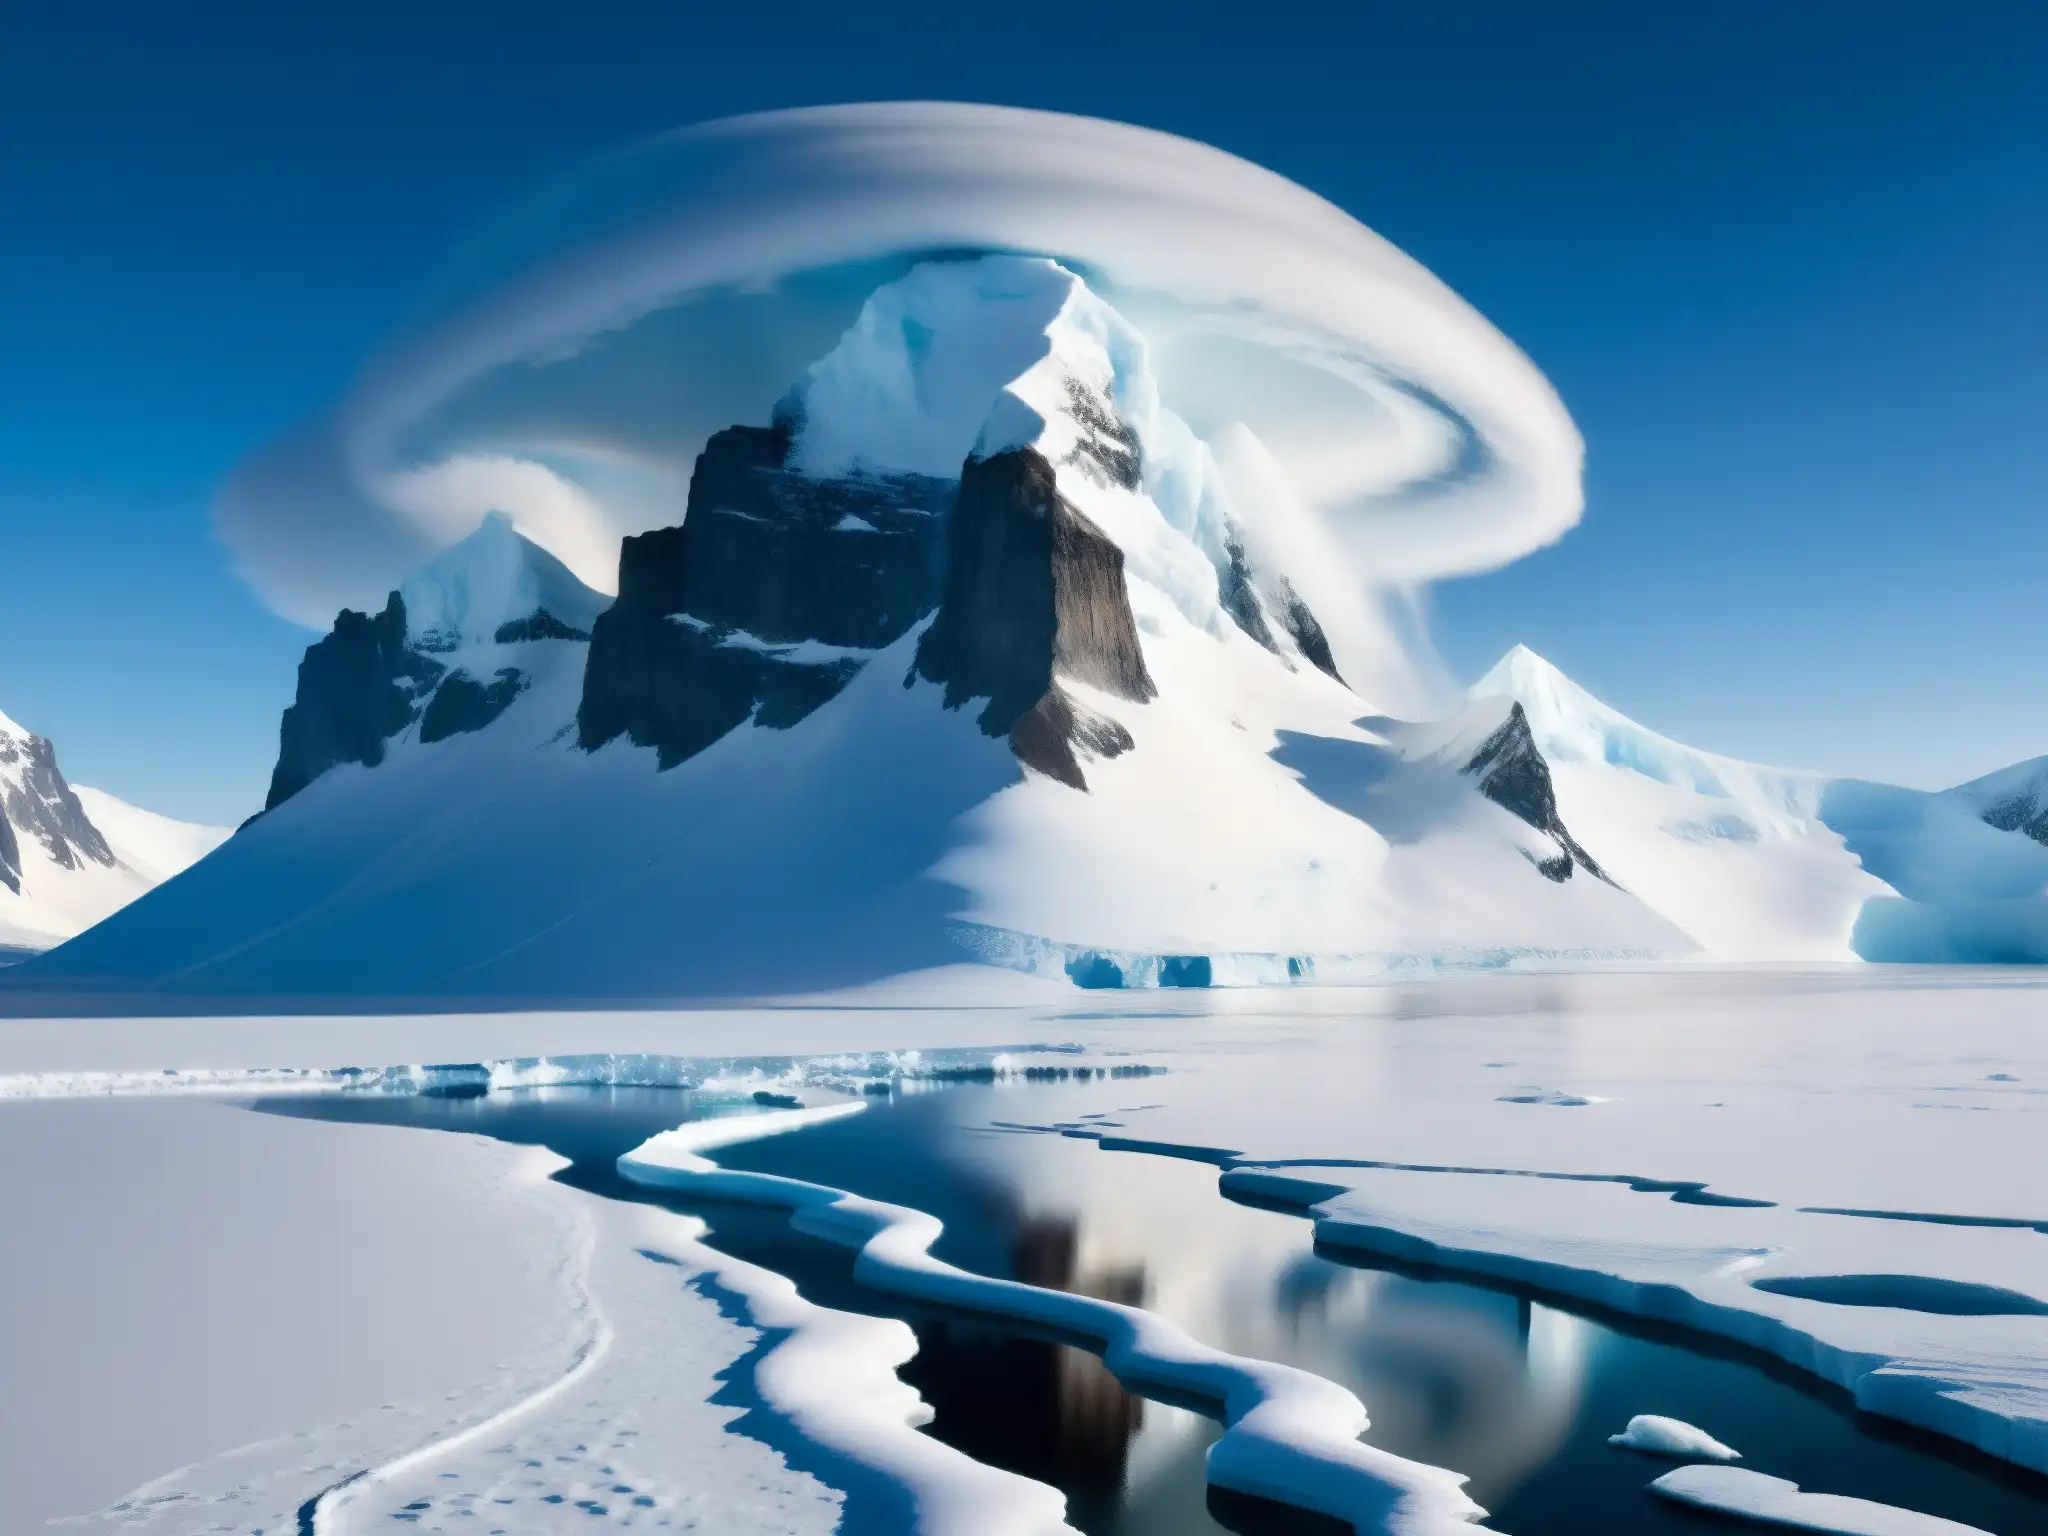 Espectacular paisaje antártico con estructura misteriosa entre nieve y niebla, evocando bases alienígenas, mitos y leyendas